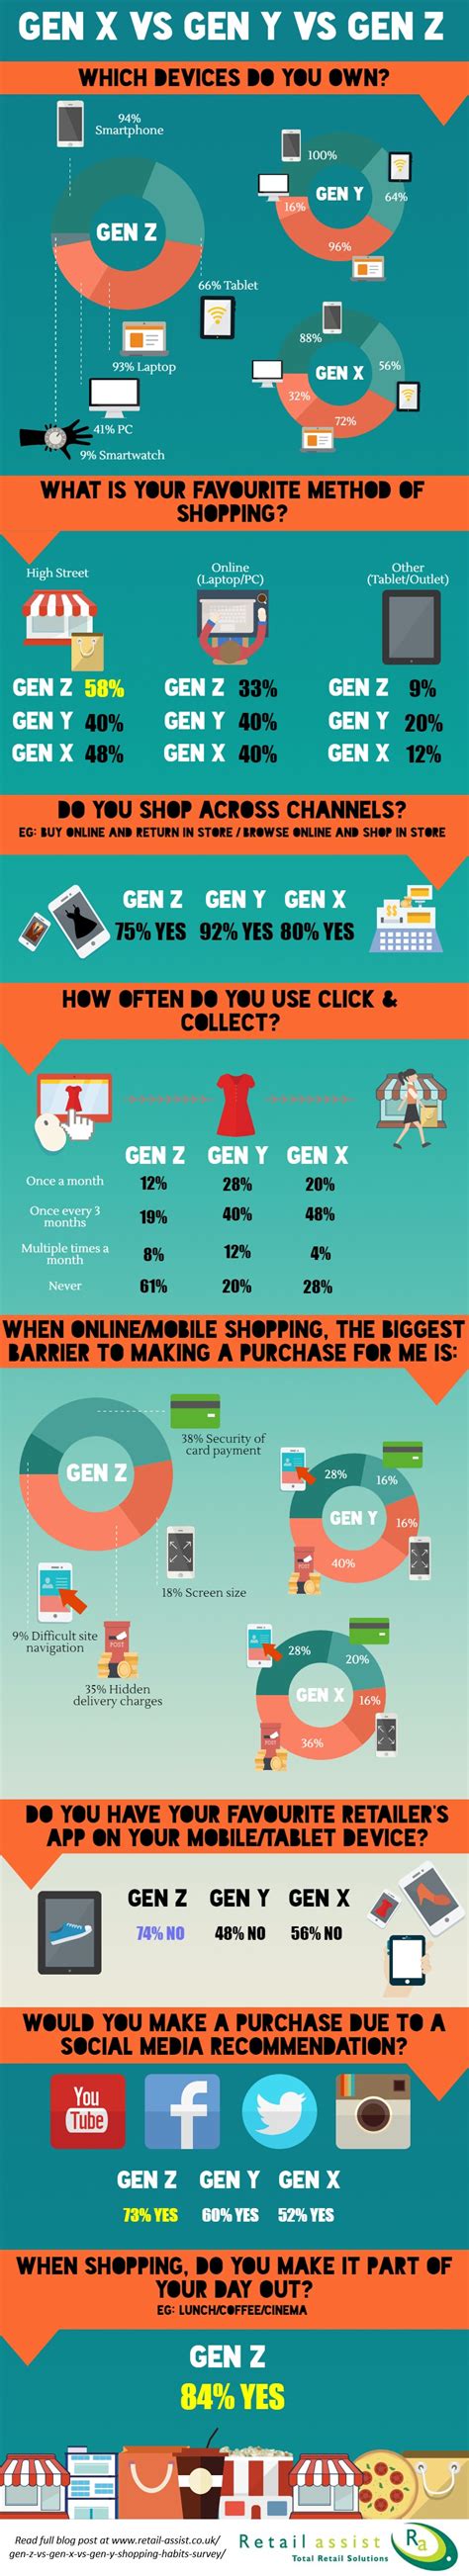 Gen Z Vs Gen X Vs Gen Y Shopping Habits Survey Retail